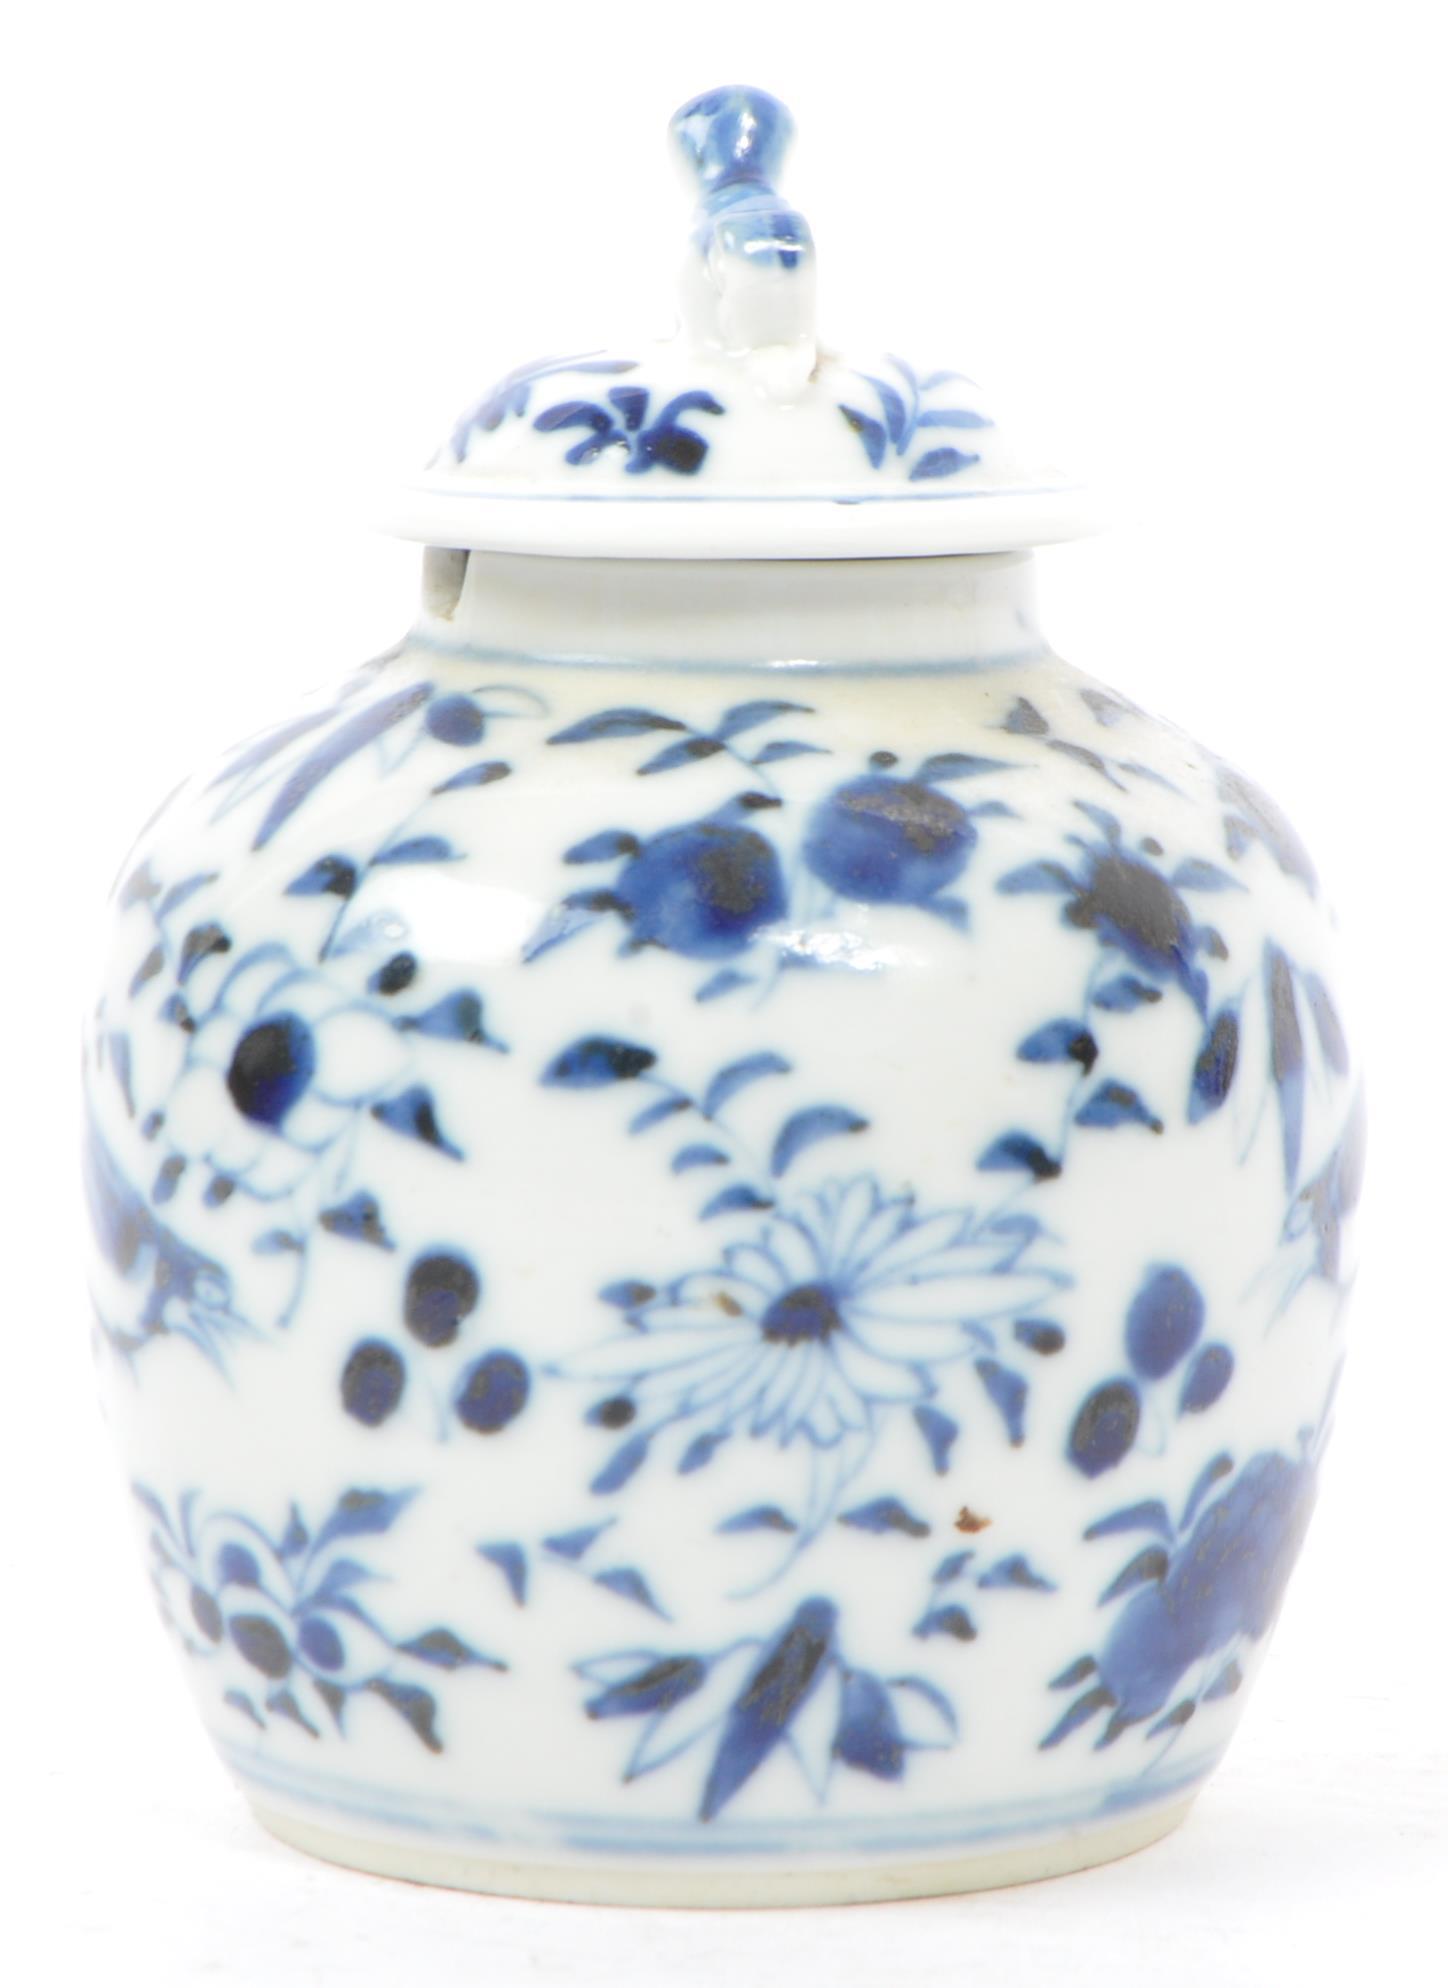 19TH CENTURY BLUE & WHITE CHINESE KANGXI GINGER JAR - Image 4 of 7